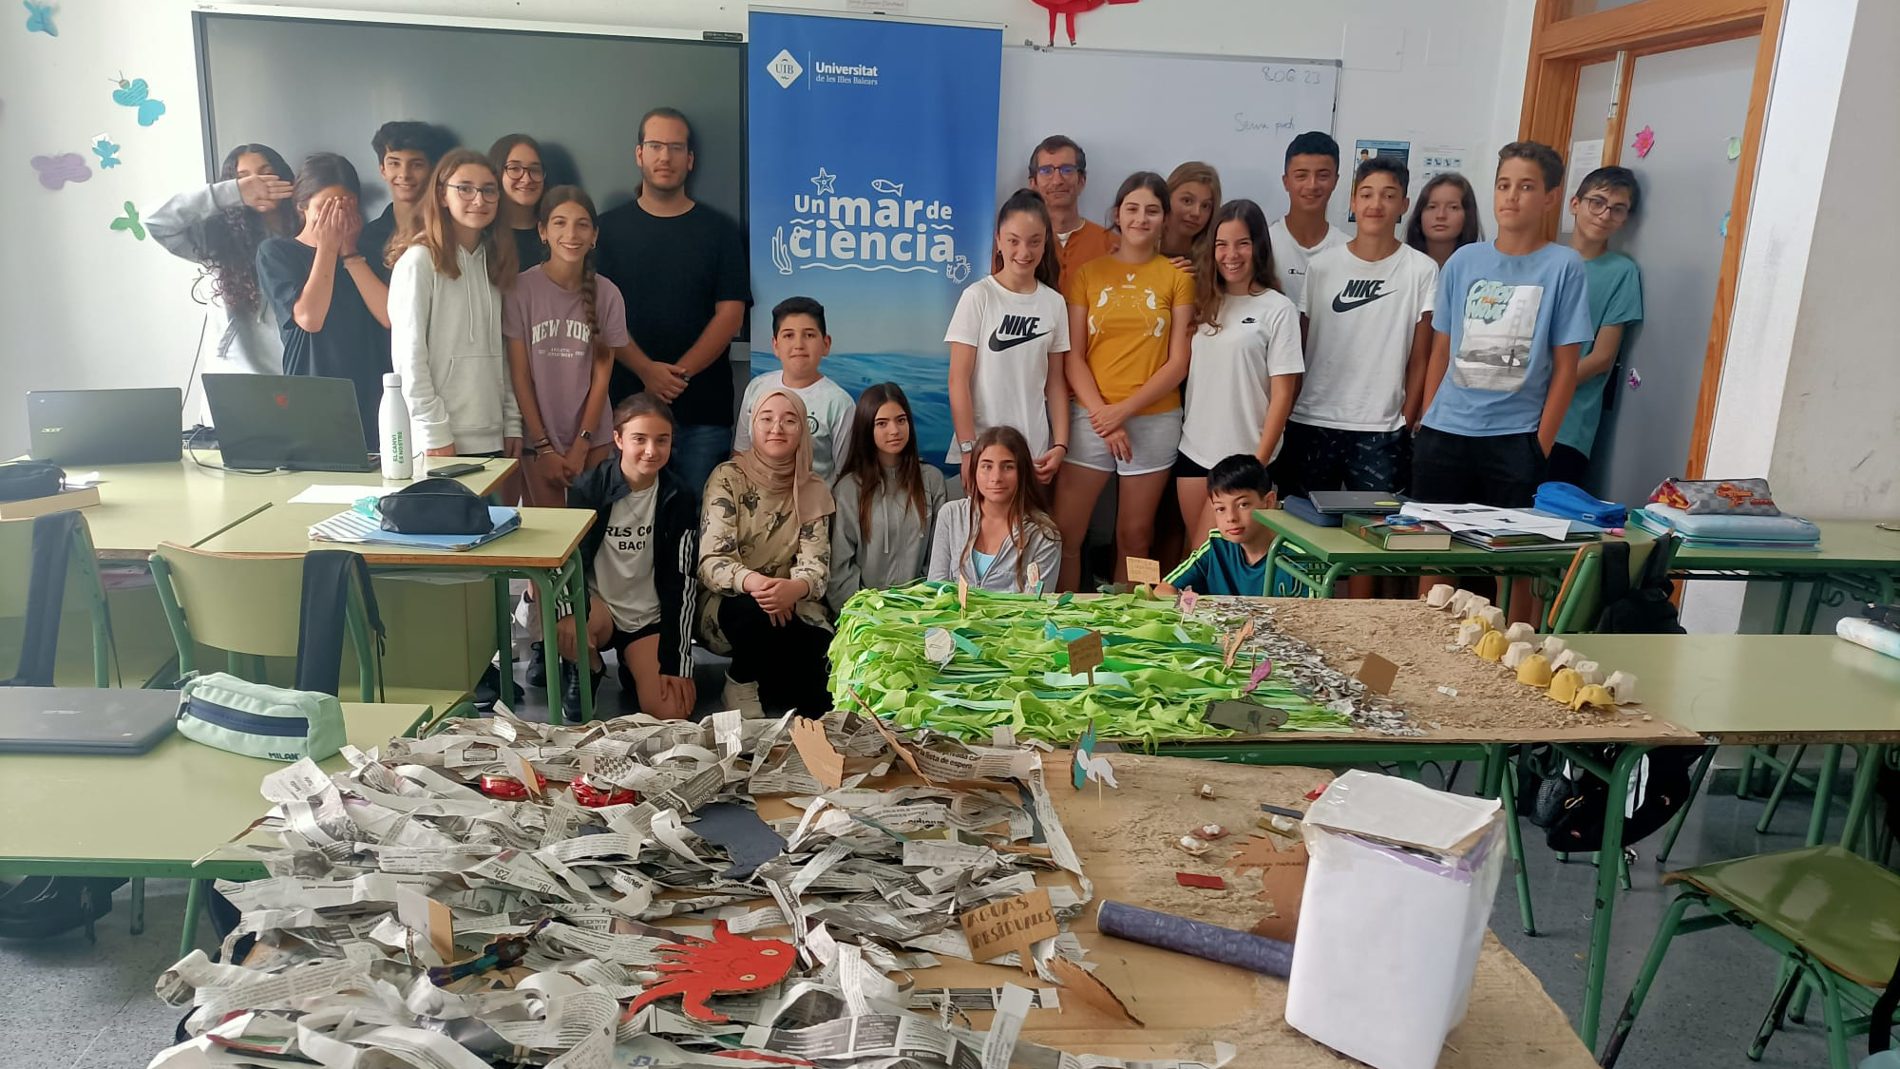 L'IES Sa Colomina d’Eivissa guanya el concurs «Un Mar de Ciència» de la UIB